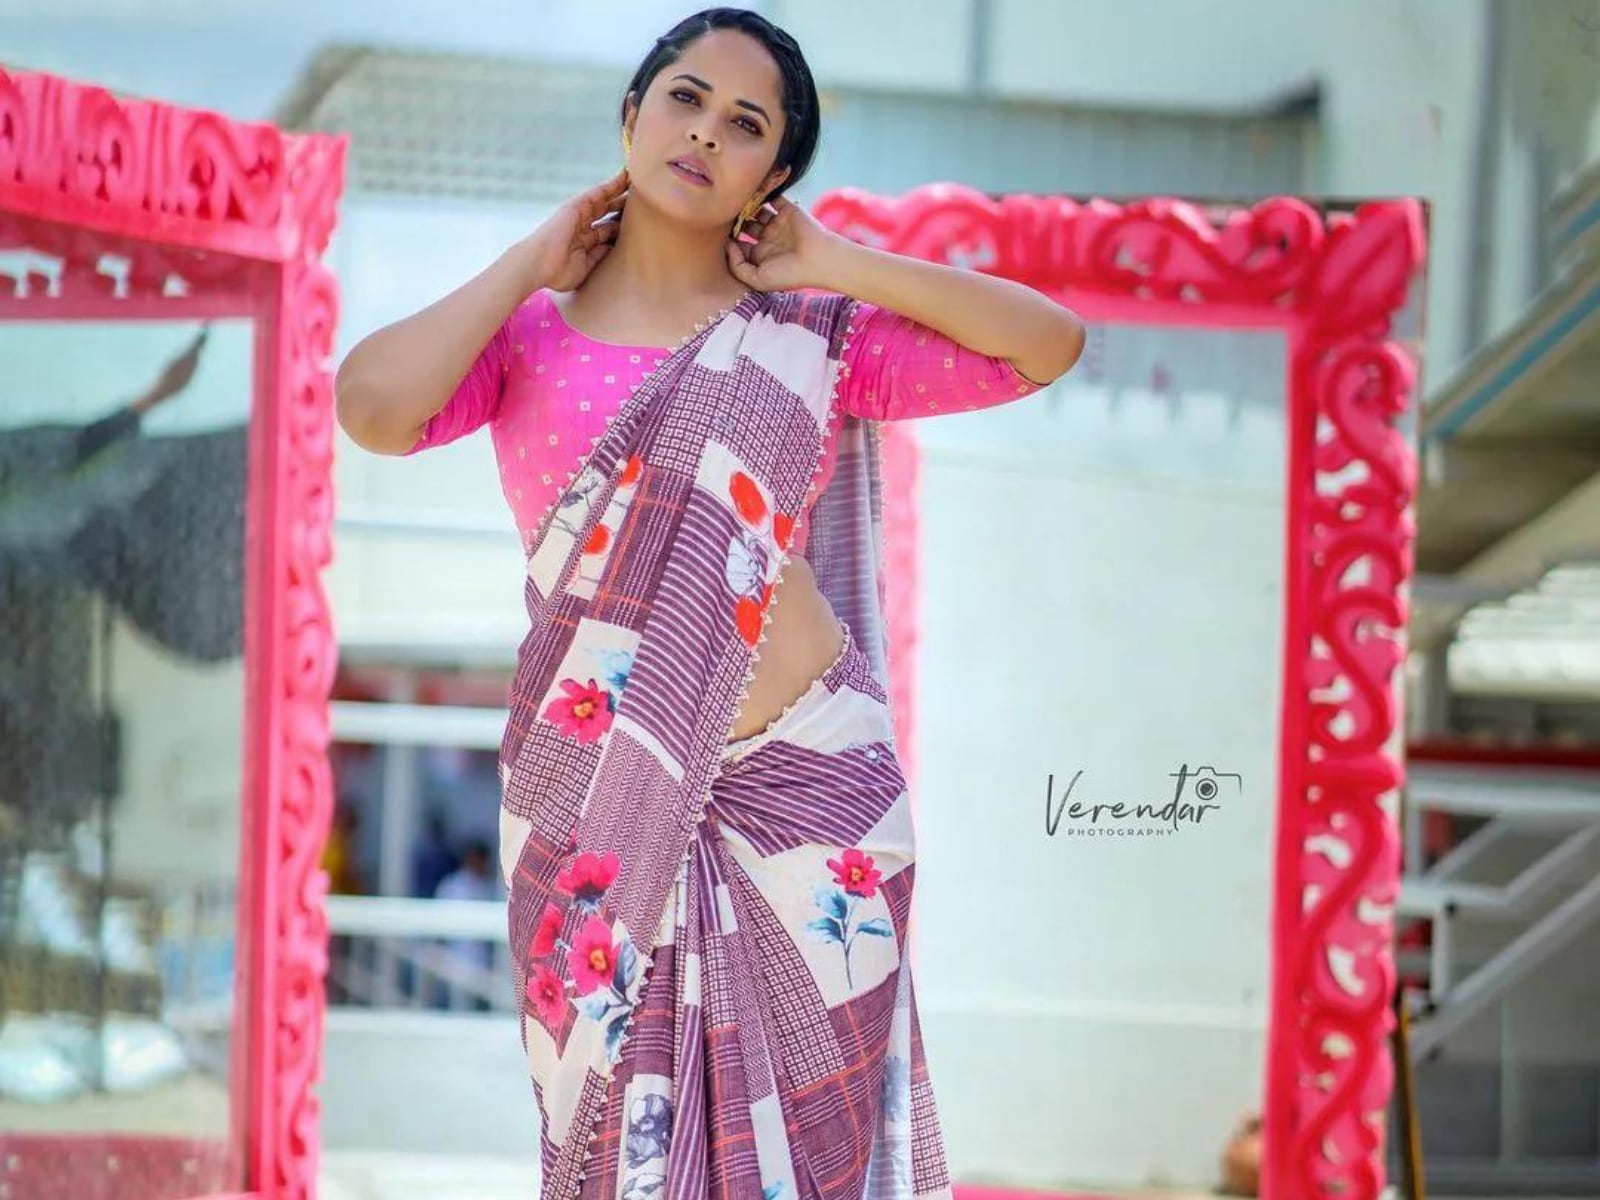 Anasuya Nude - Telugu Actress Anasuya Setting Saree Trends For Others, See Pics - News18